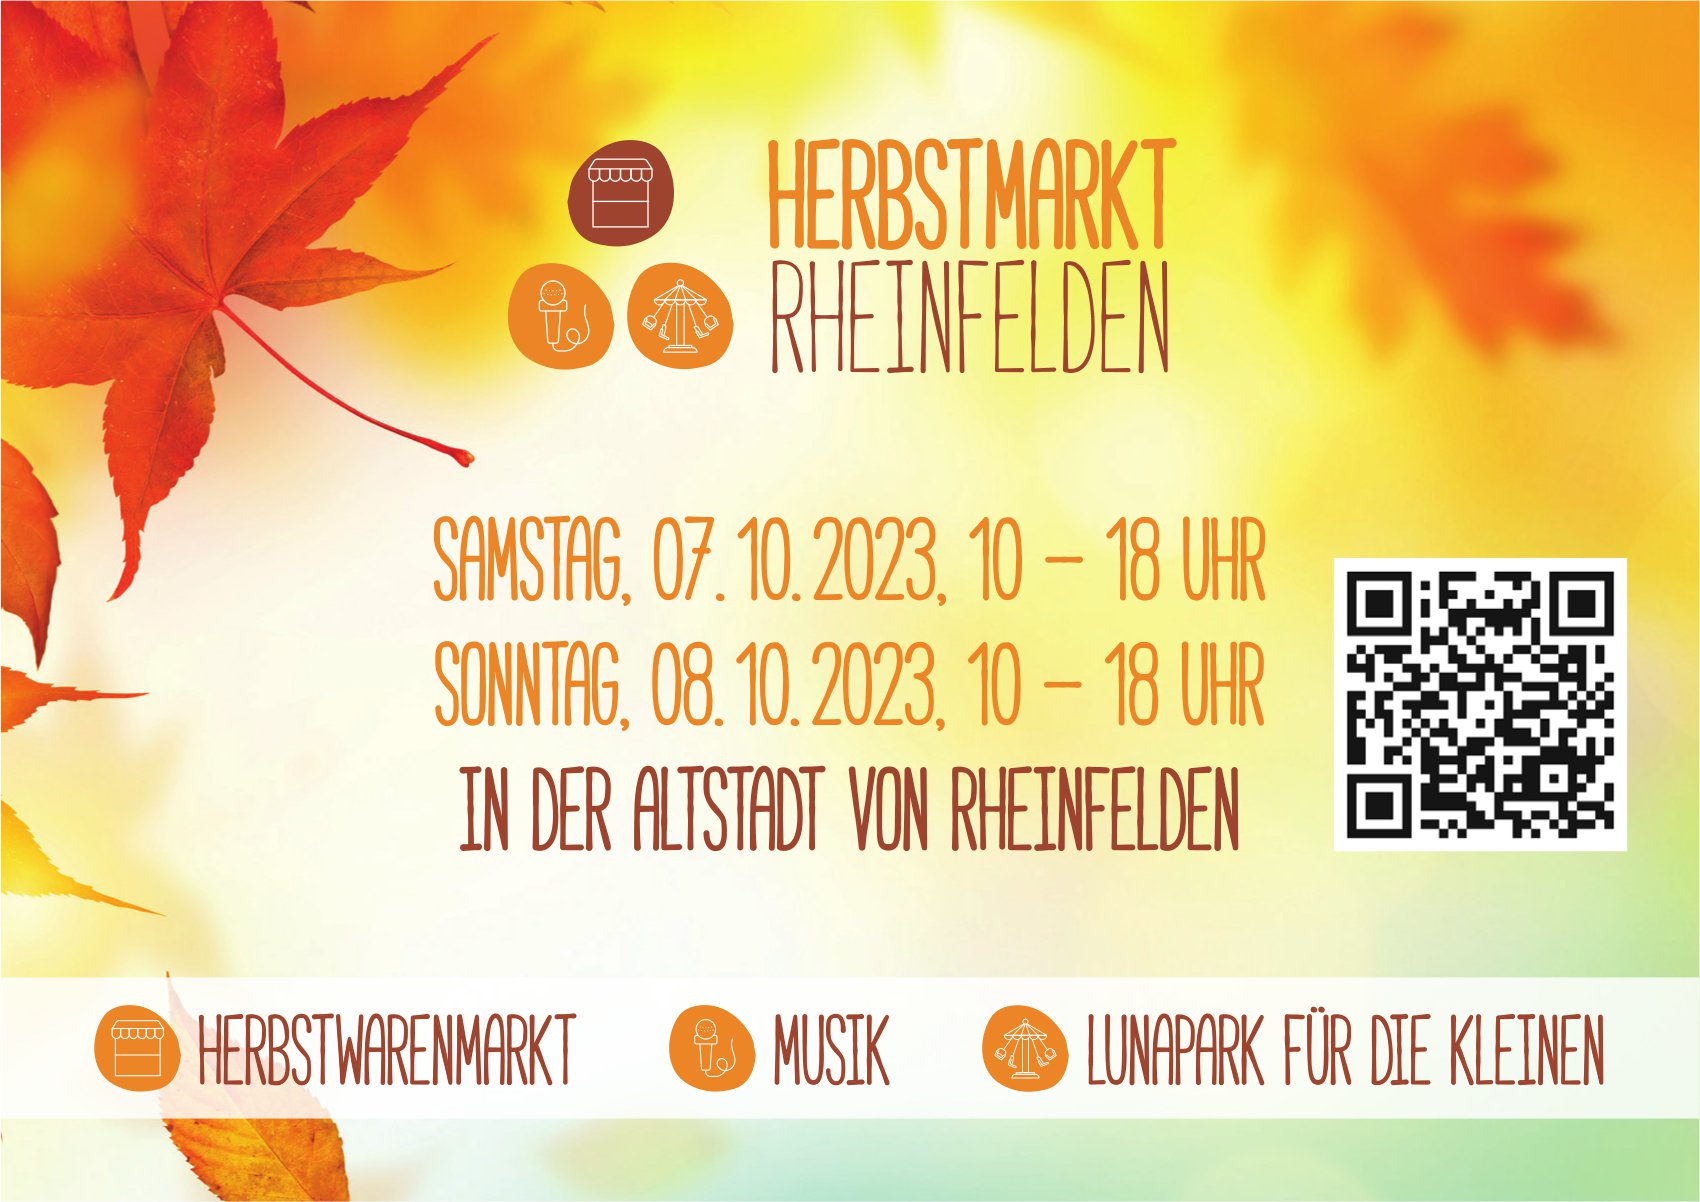 Herbstmarkt, 7. und 8. Oktober, Altstadt, Rheinfelden